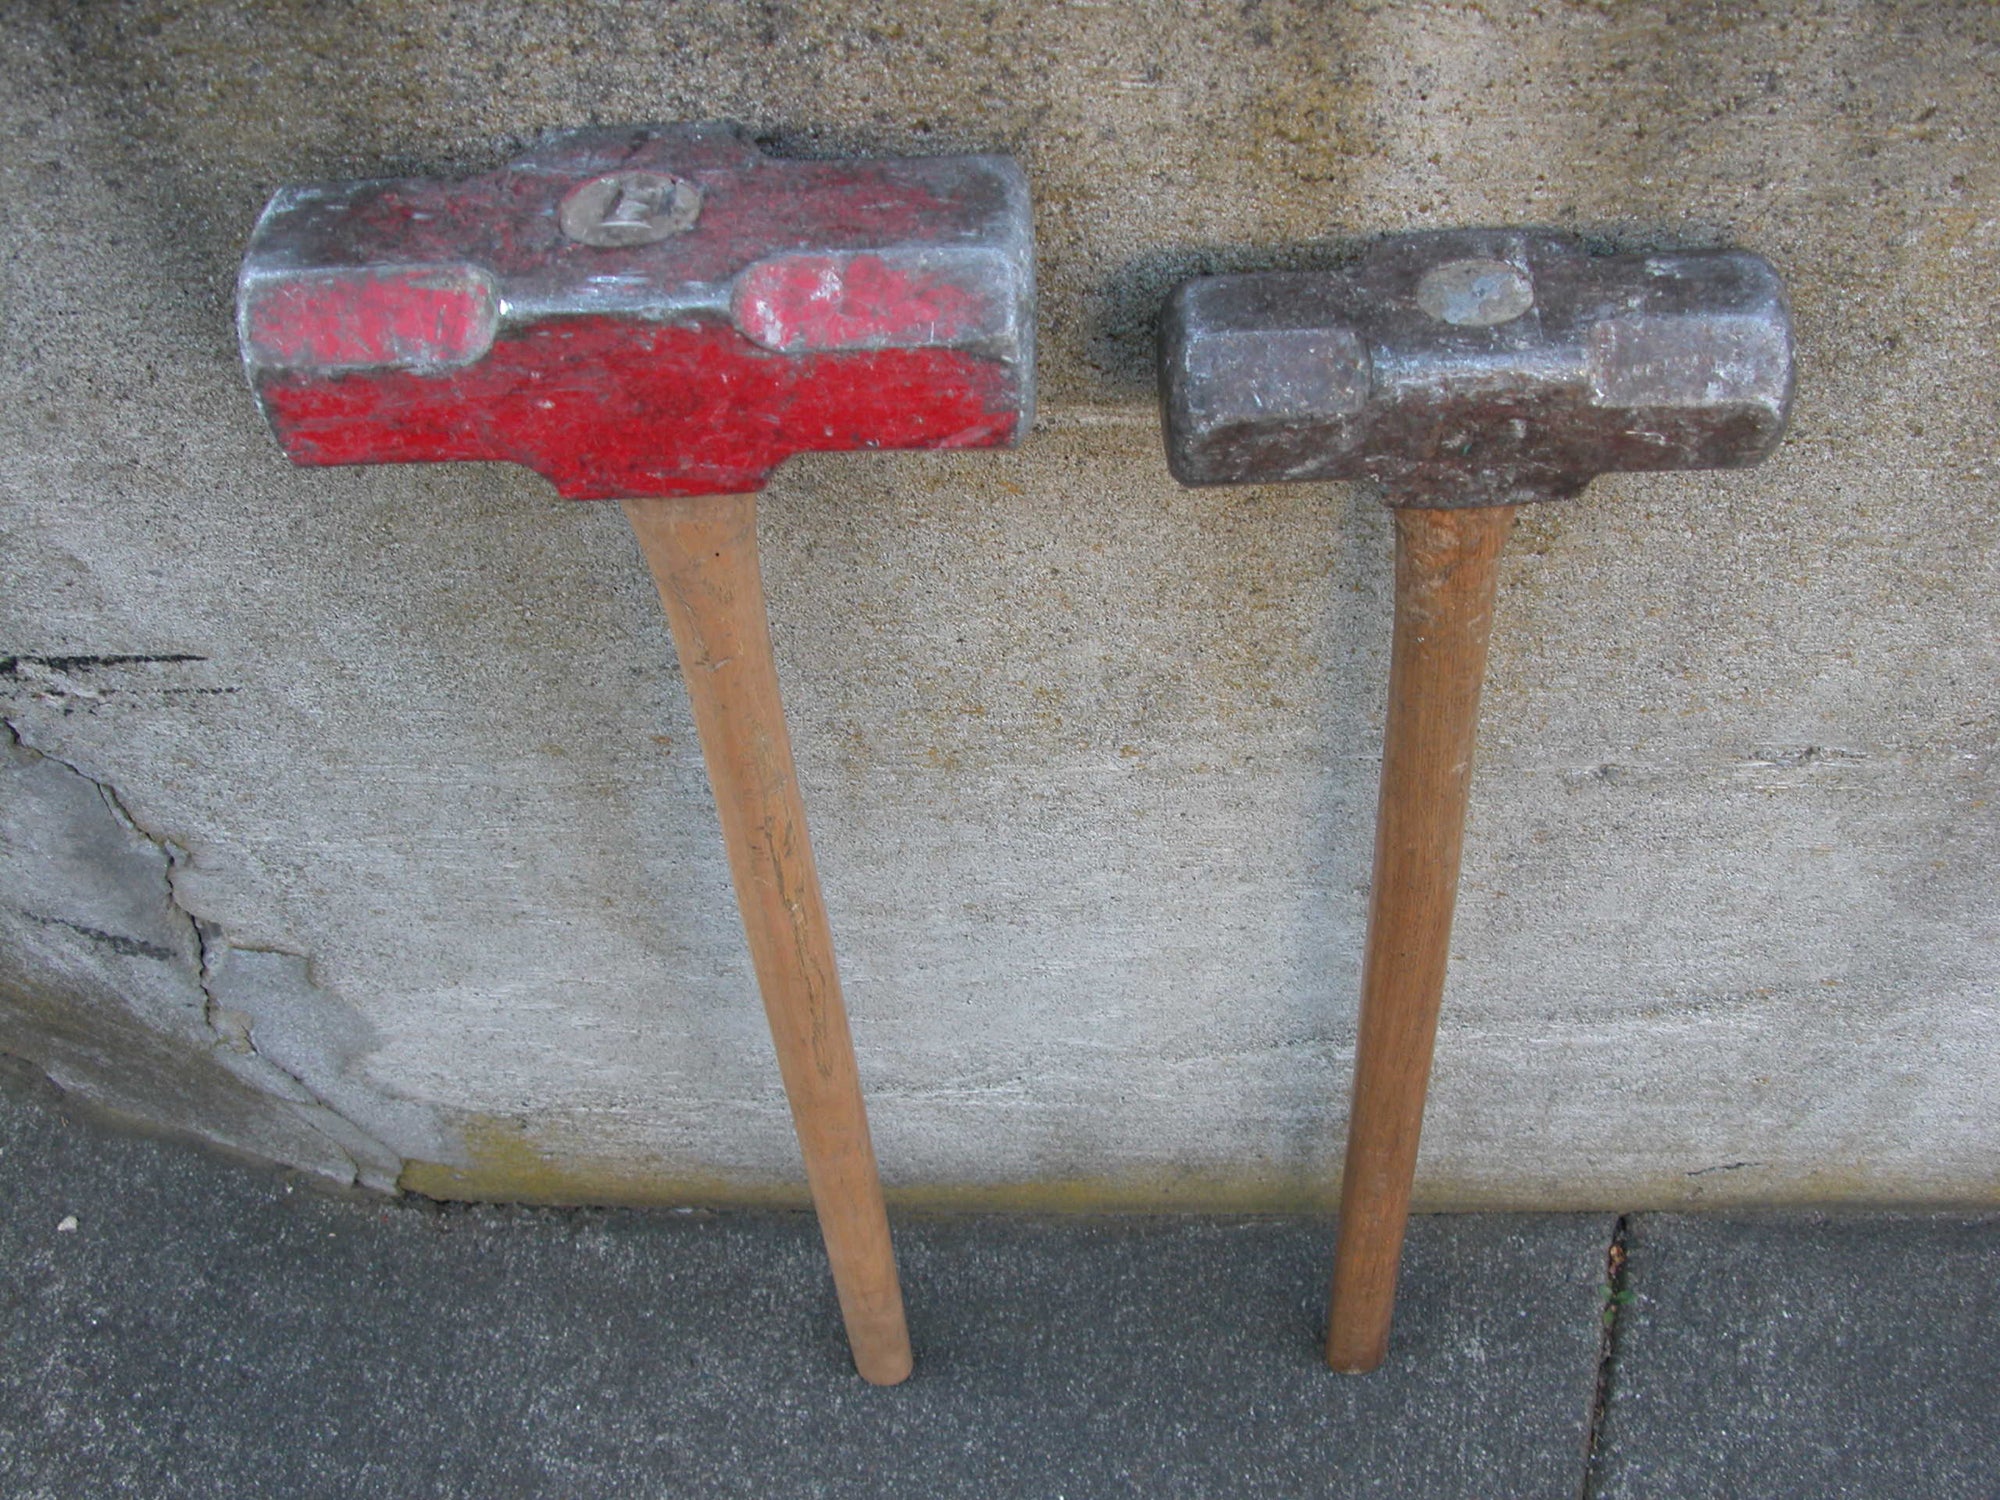 Sledgehammer for Strength